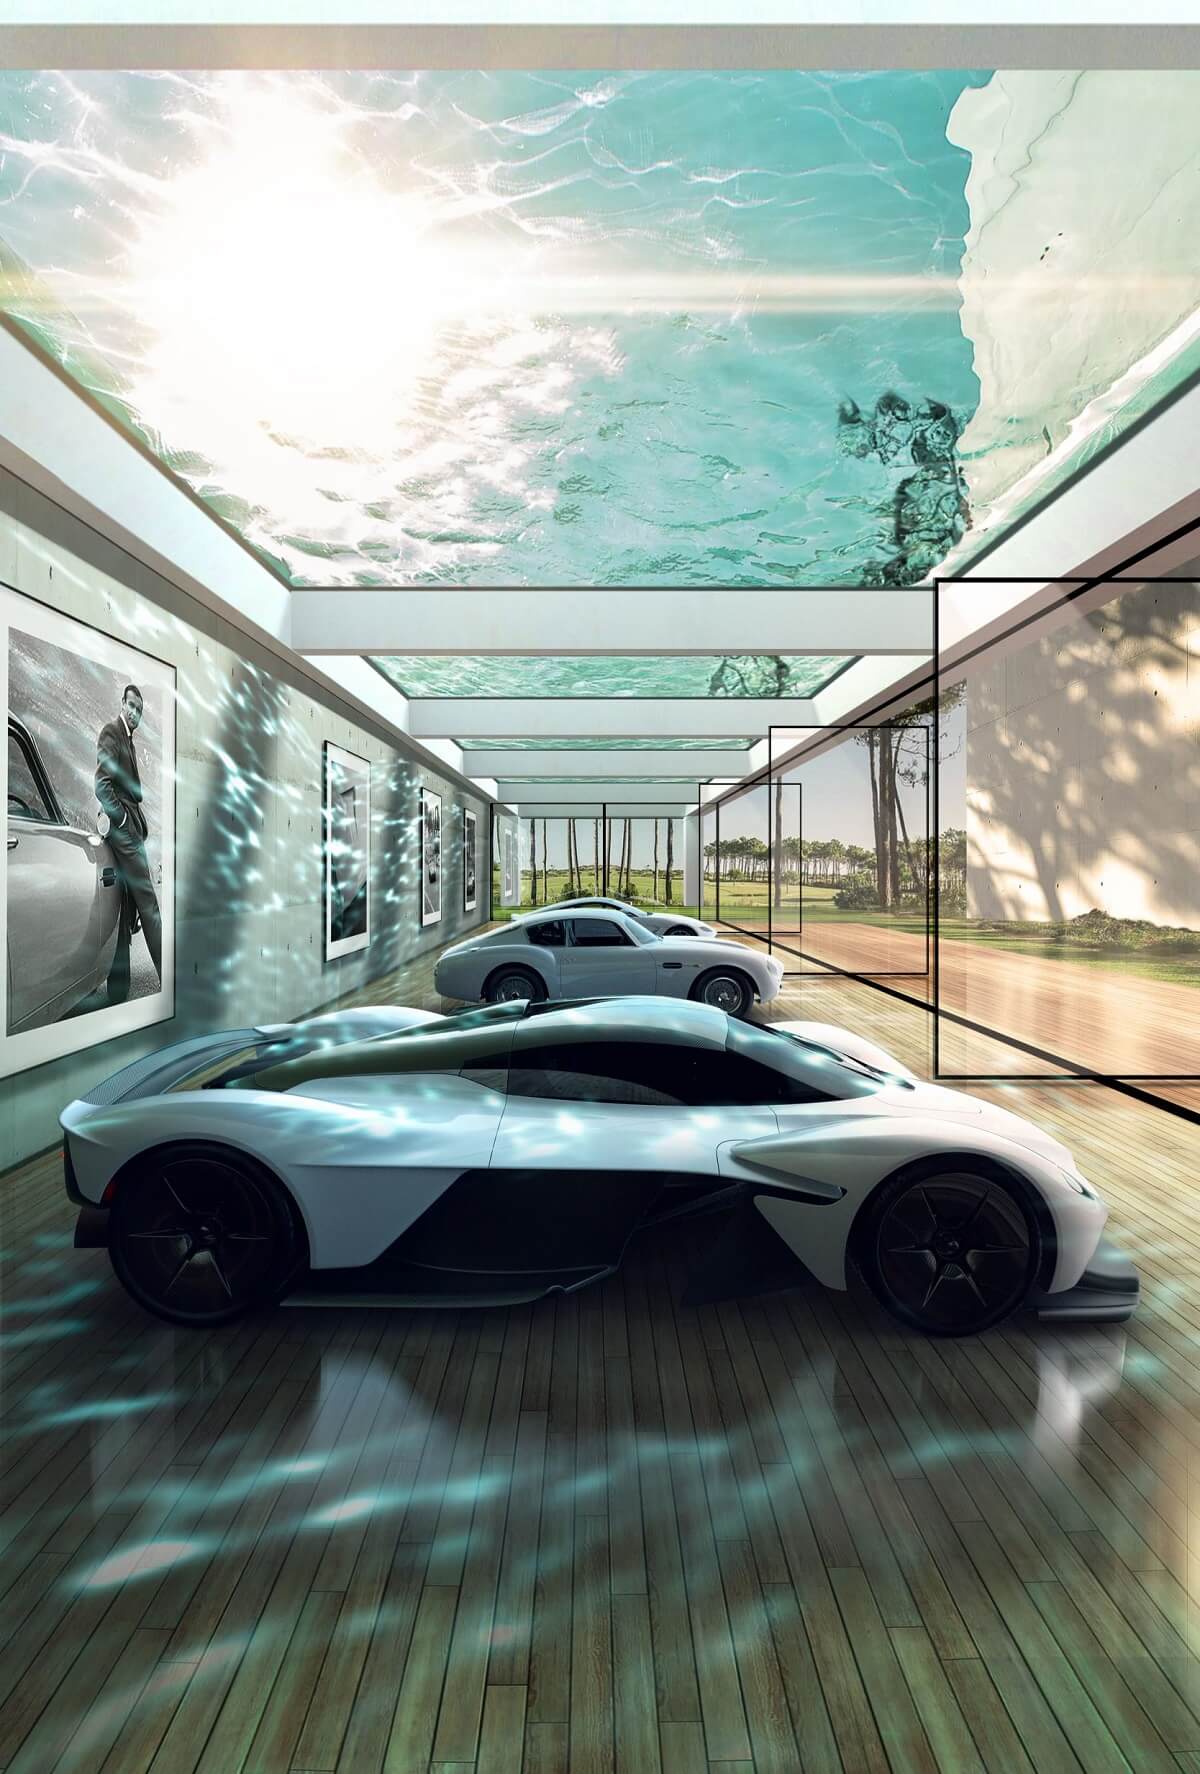 Aston-Martin-Automotive-Galleries-2.jpg